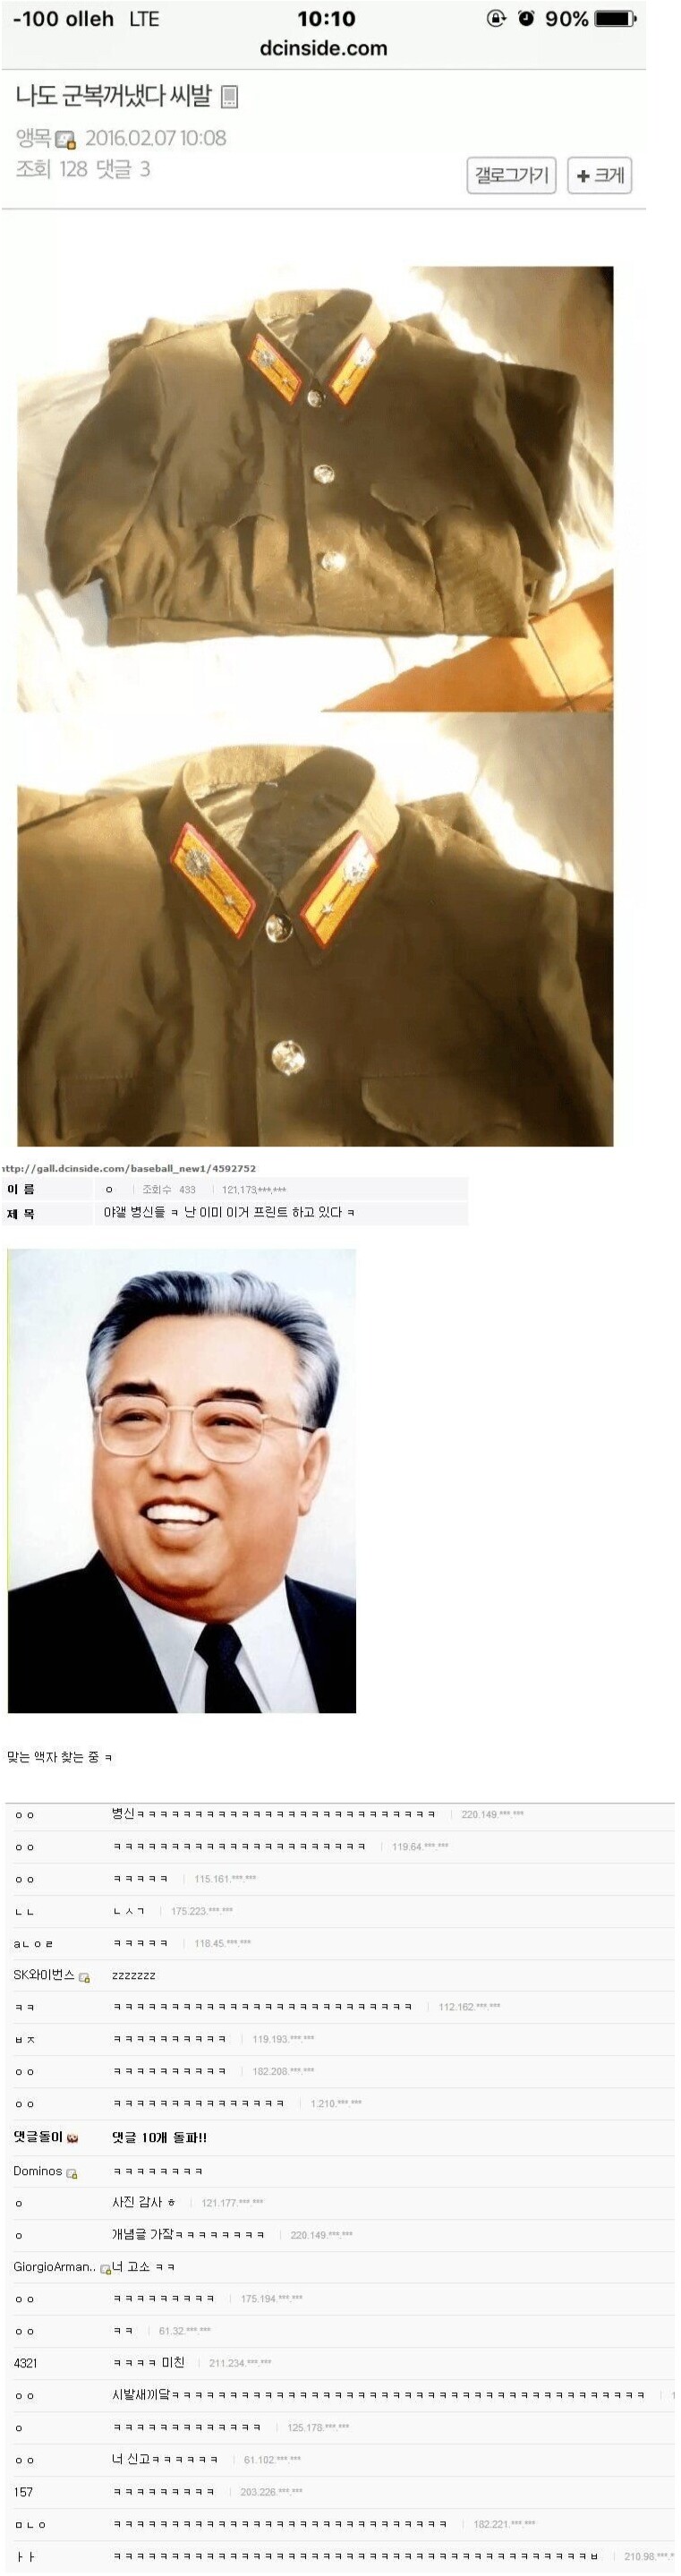 북한 도발에 페북vs디씨